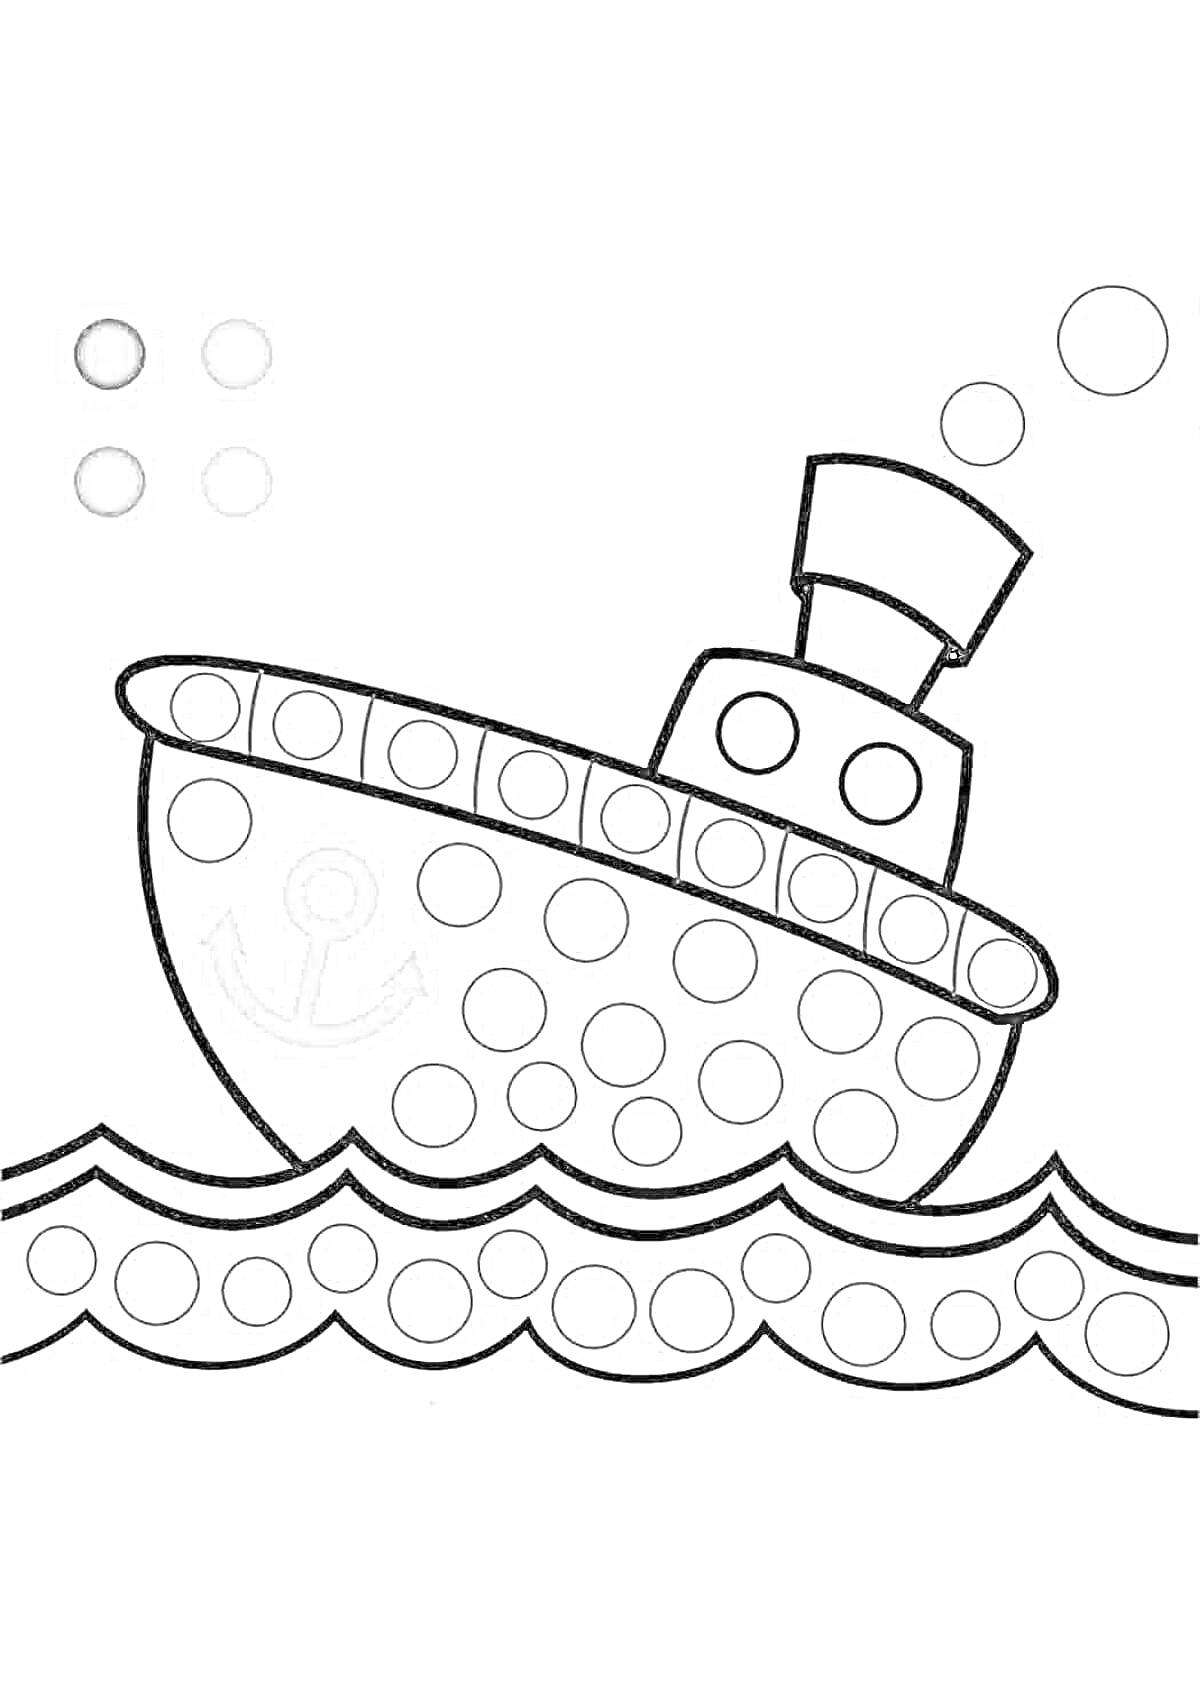 Раскраска Кораблик с кругами для пальчикового рисования, волны, якорь, пузыри